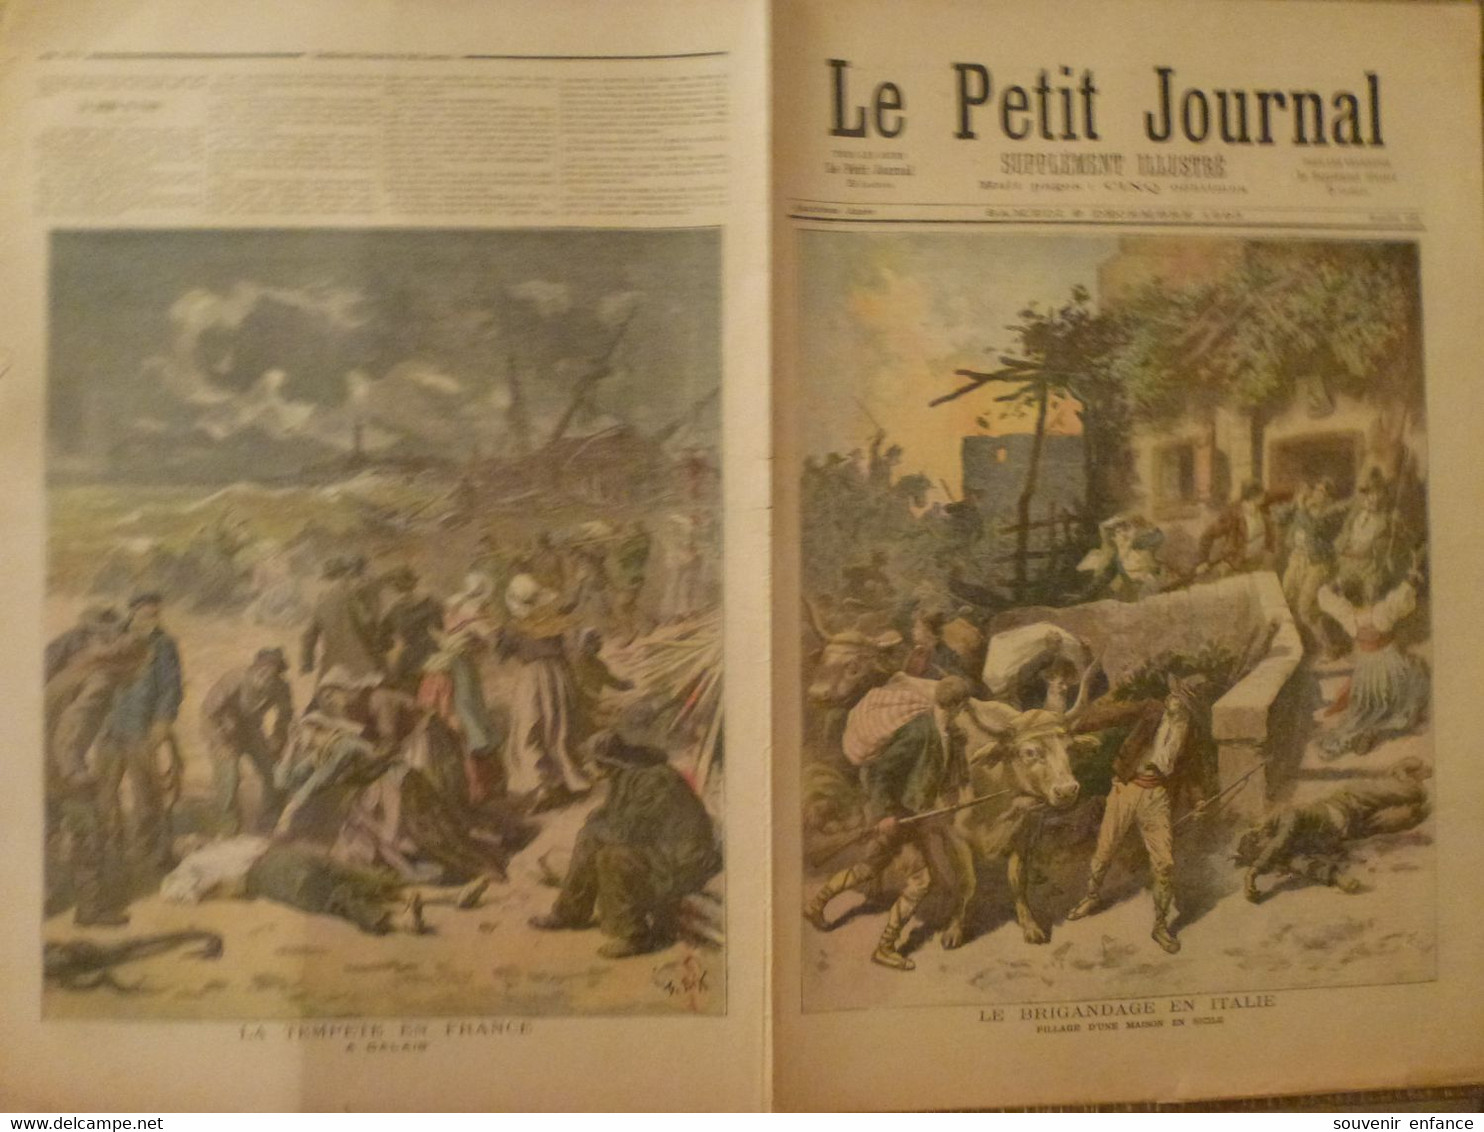 Le Petit Journal 9 Décembre 1893 159 Brigandage En Italie Sicile Tempête En France Calais 62 Dahoméen Chedingen Dahomée - 1850 - 1899